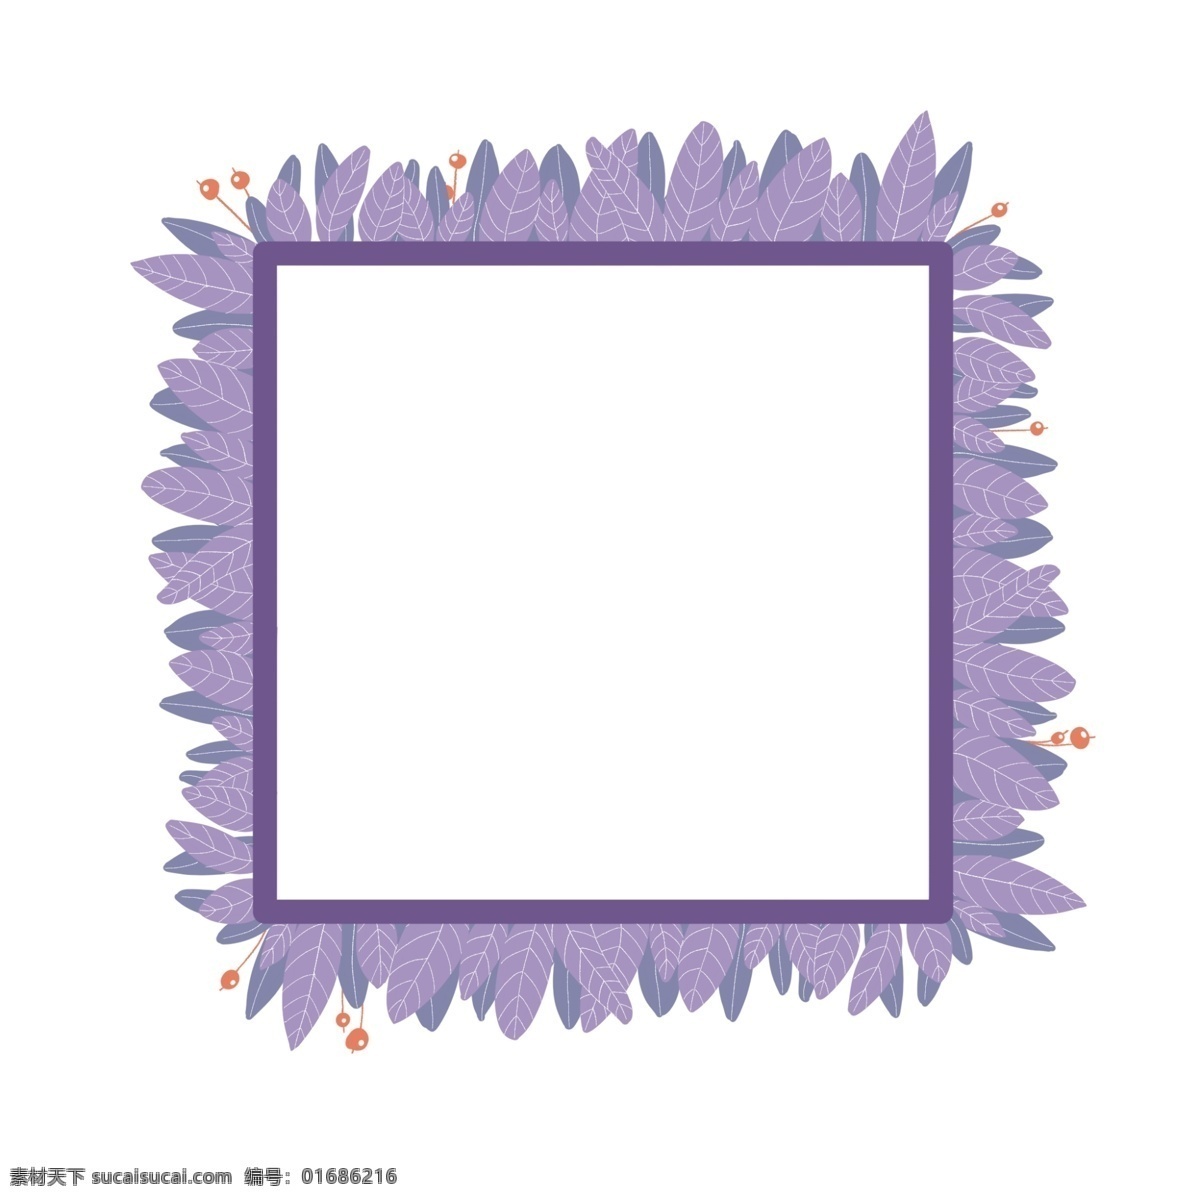 方形 装饰 紫色 边框 紫色绿植植物 卡通边框 小框 紫色花草边框 方形装饰边框 可爱边框 紫色框